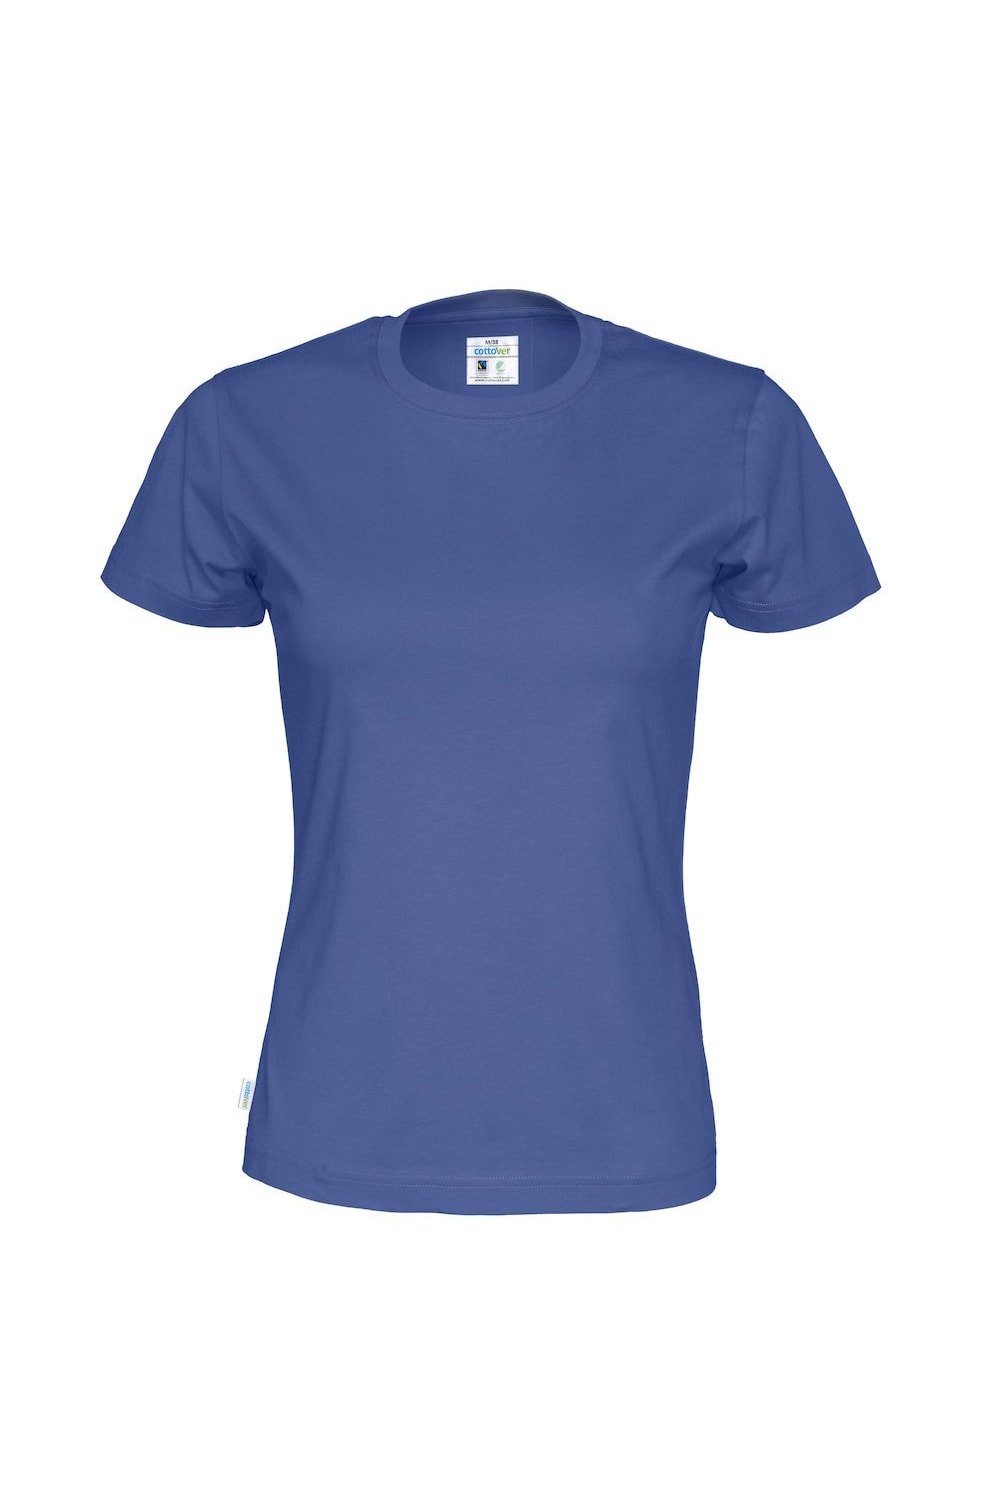 Womens/Ladies Organic T-Shirt (Royal Blue)